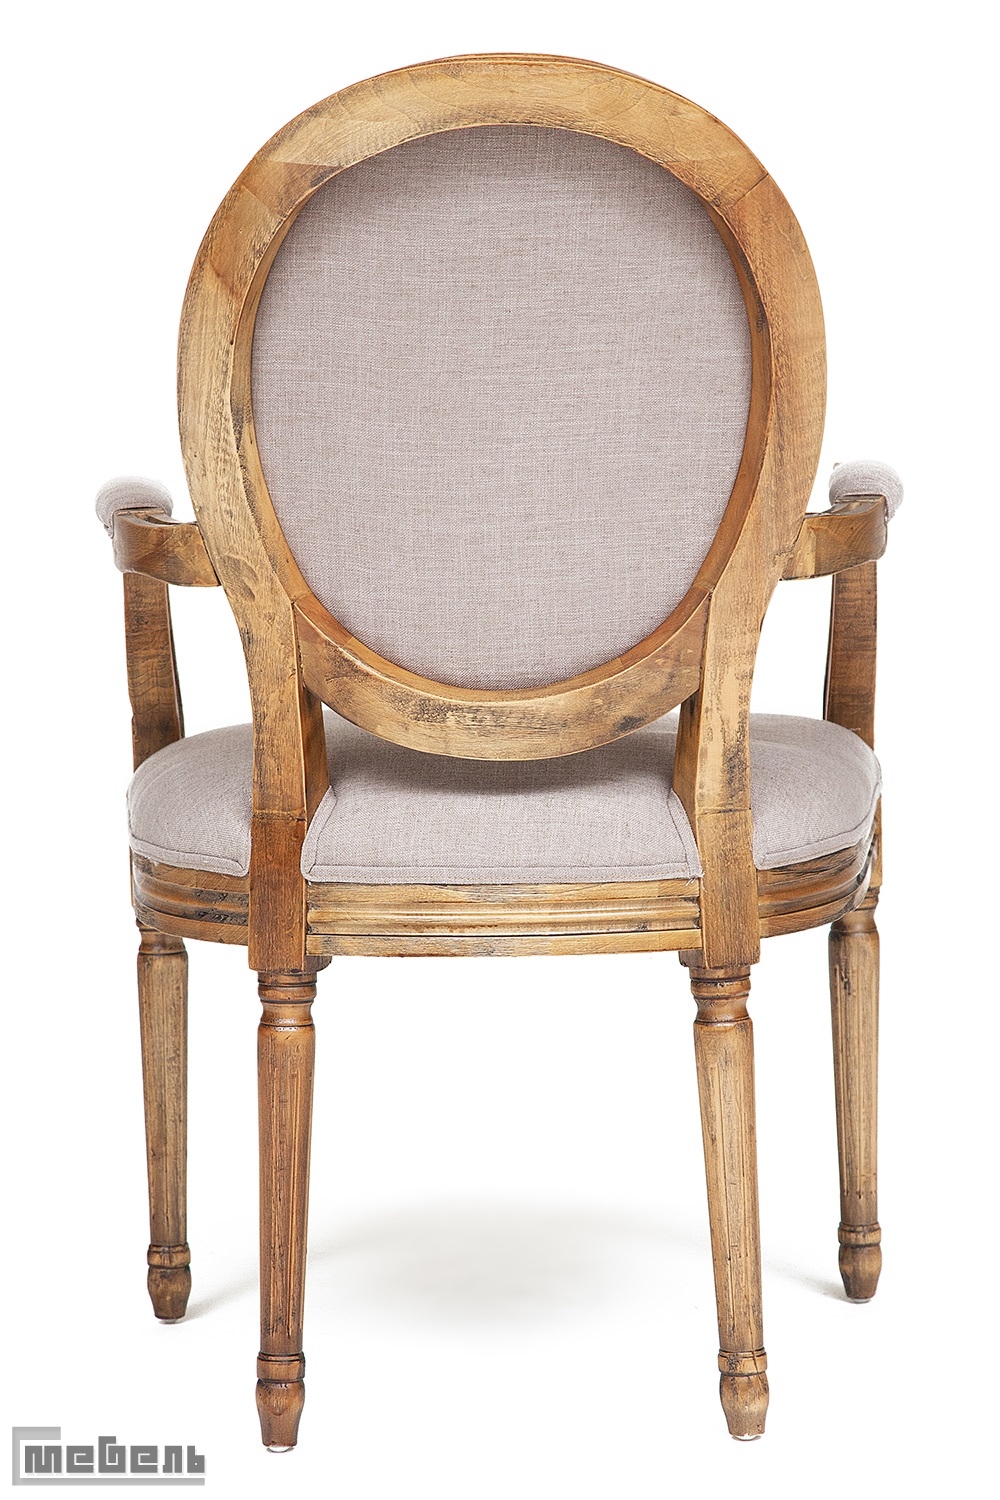 Кресло с мягким сиденьем и спинкой "Медальон" (Medalion) CB2245